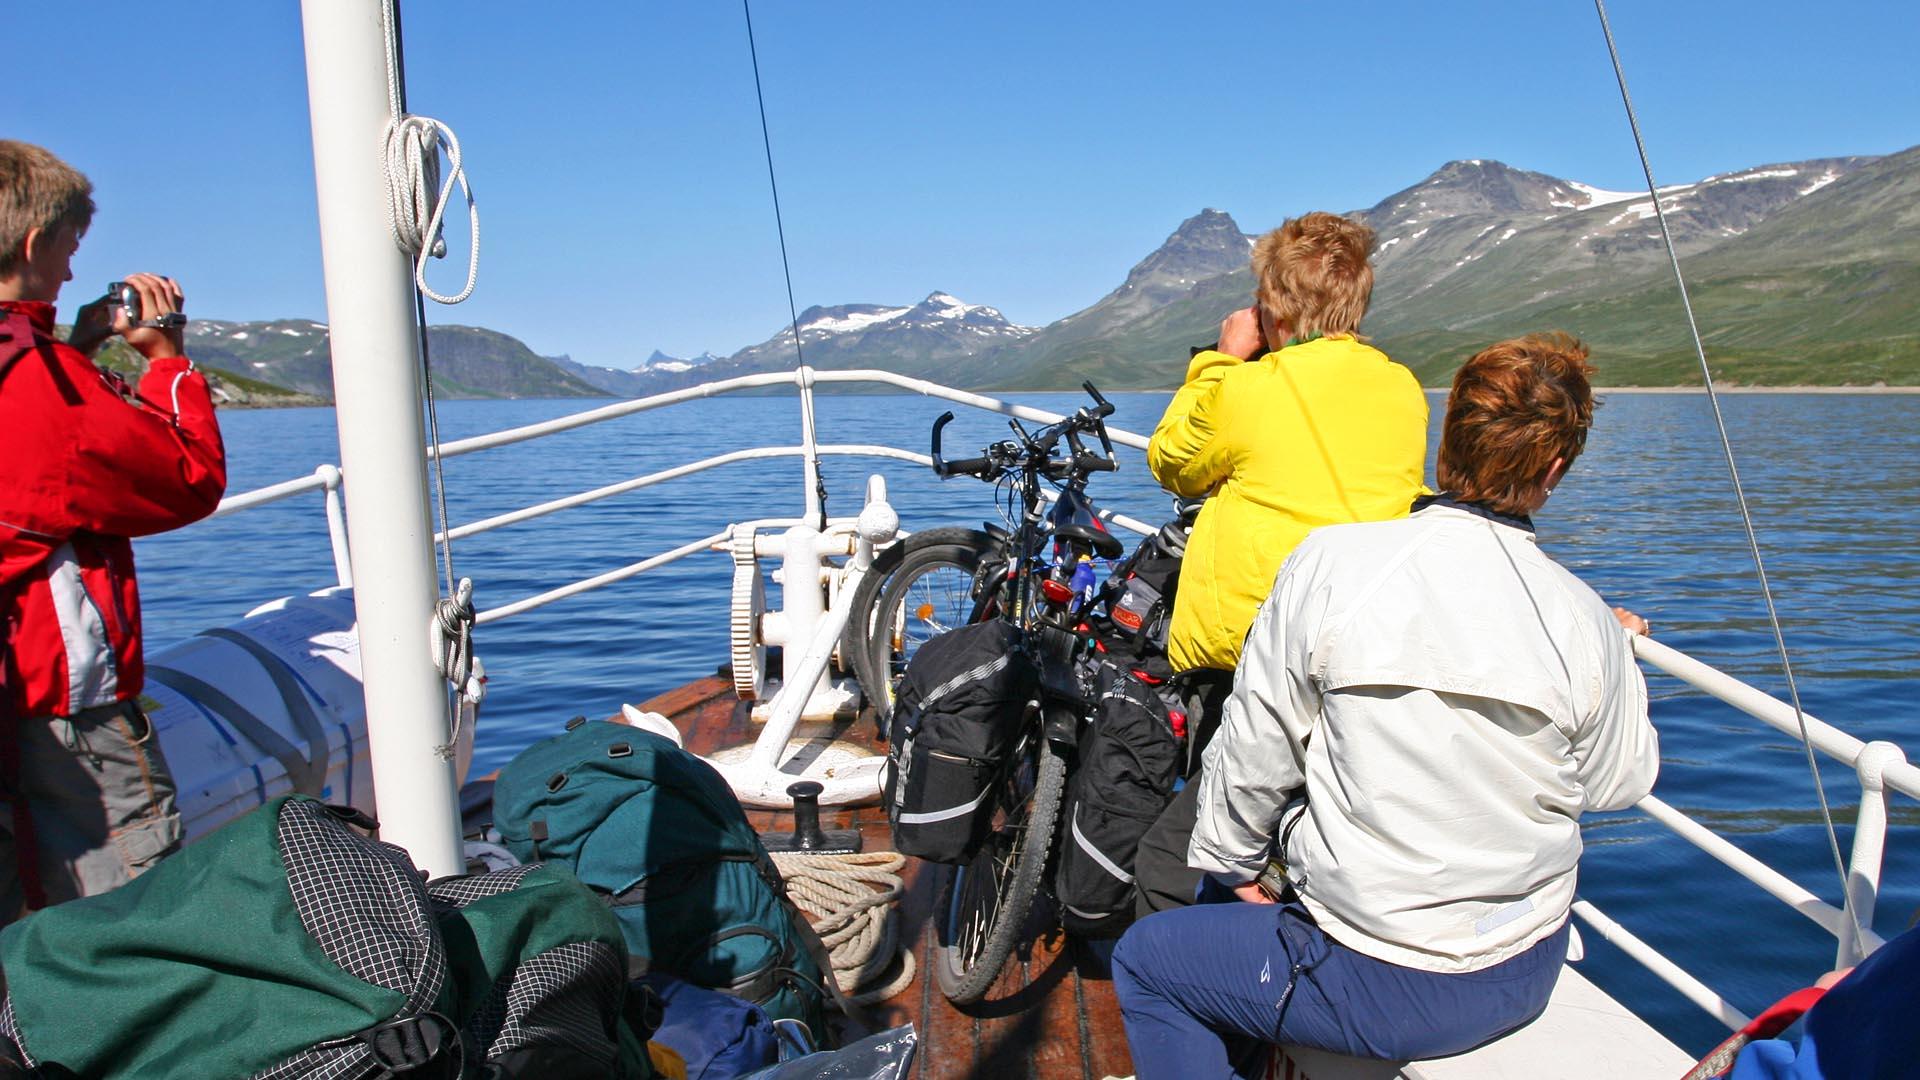 Leute an Board eines Passagierbootes auf einem großen Bergsee, der von Zweitausendern umgeben ist, an einem schönen Sommertag. Jemand hat sein Fahrrad mitgebracht.